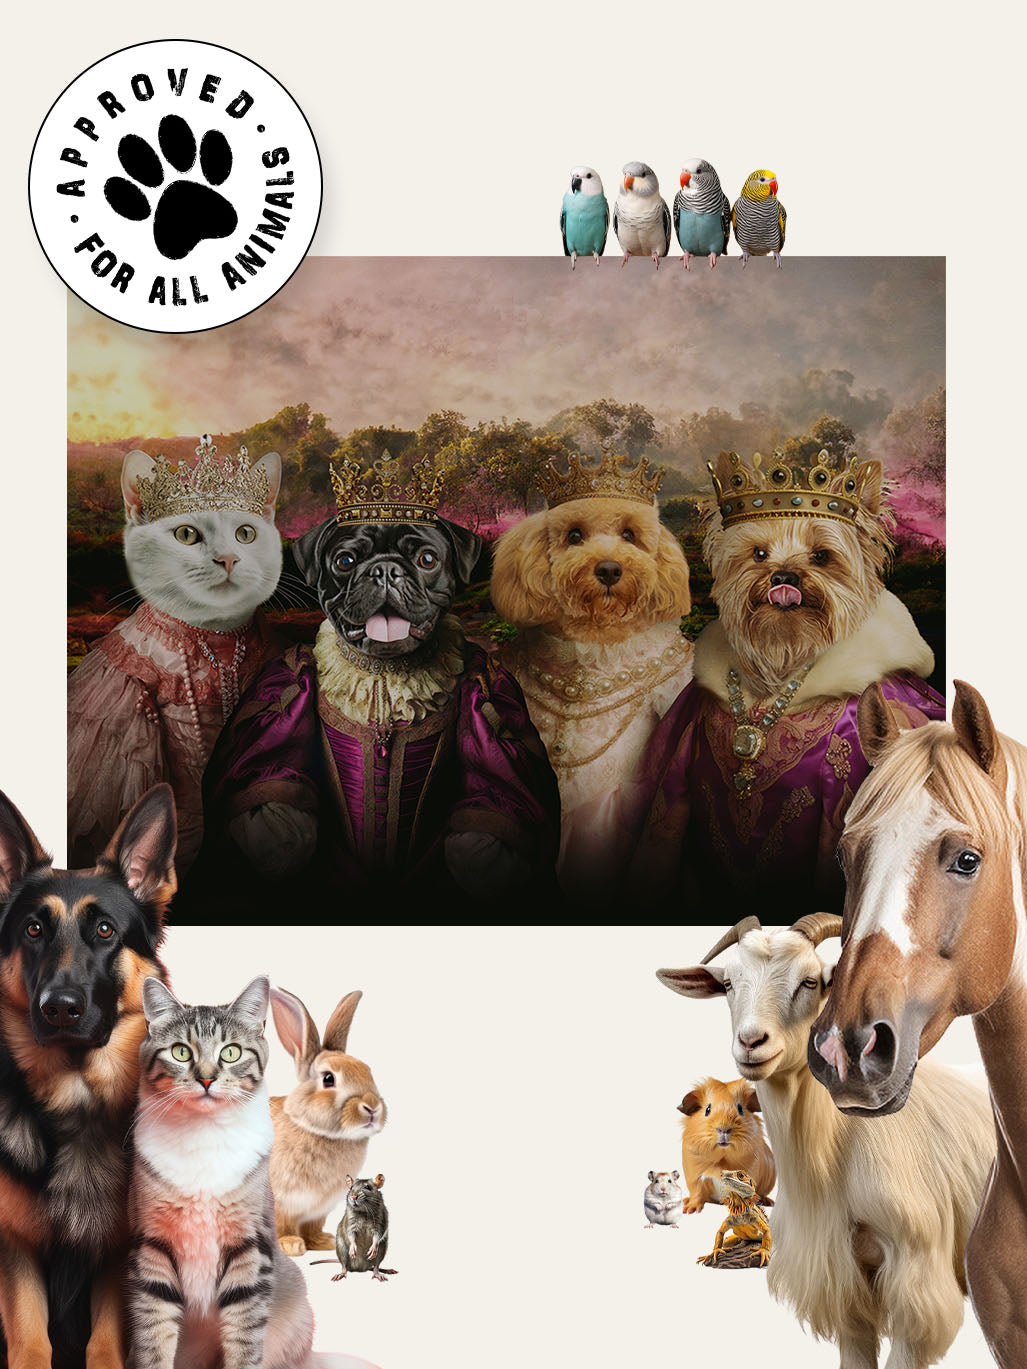 The Noble Family - Custom Pet Blanket